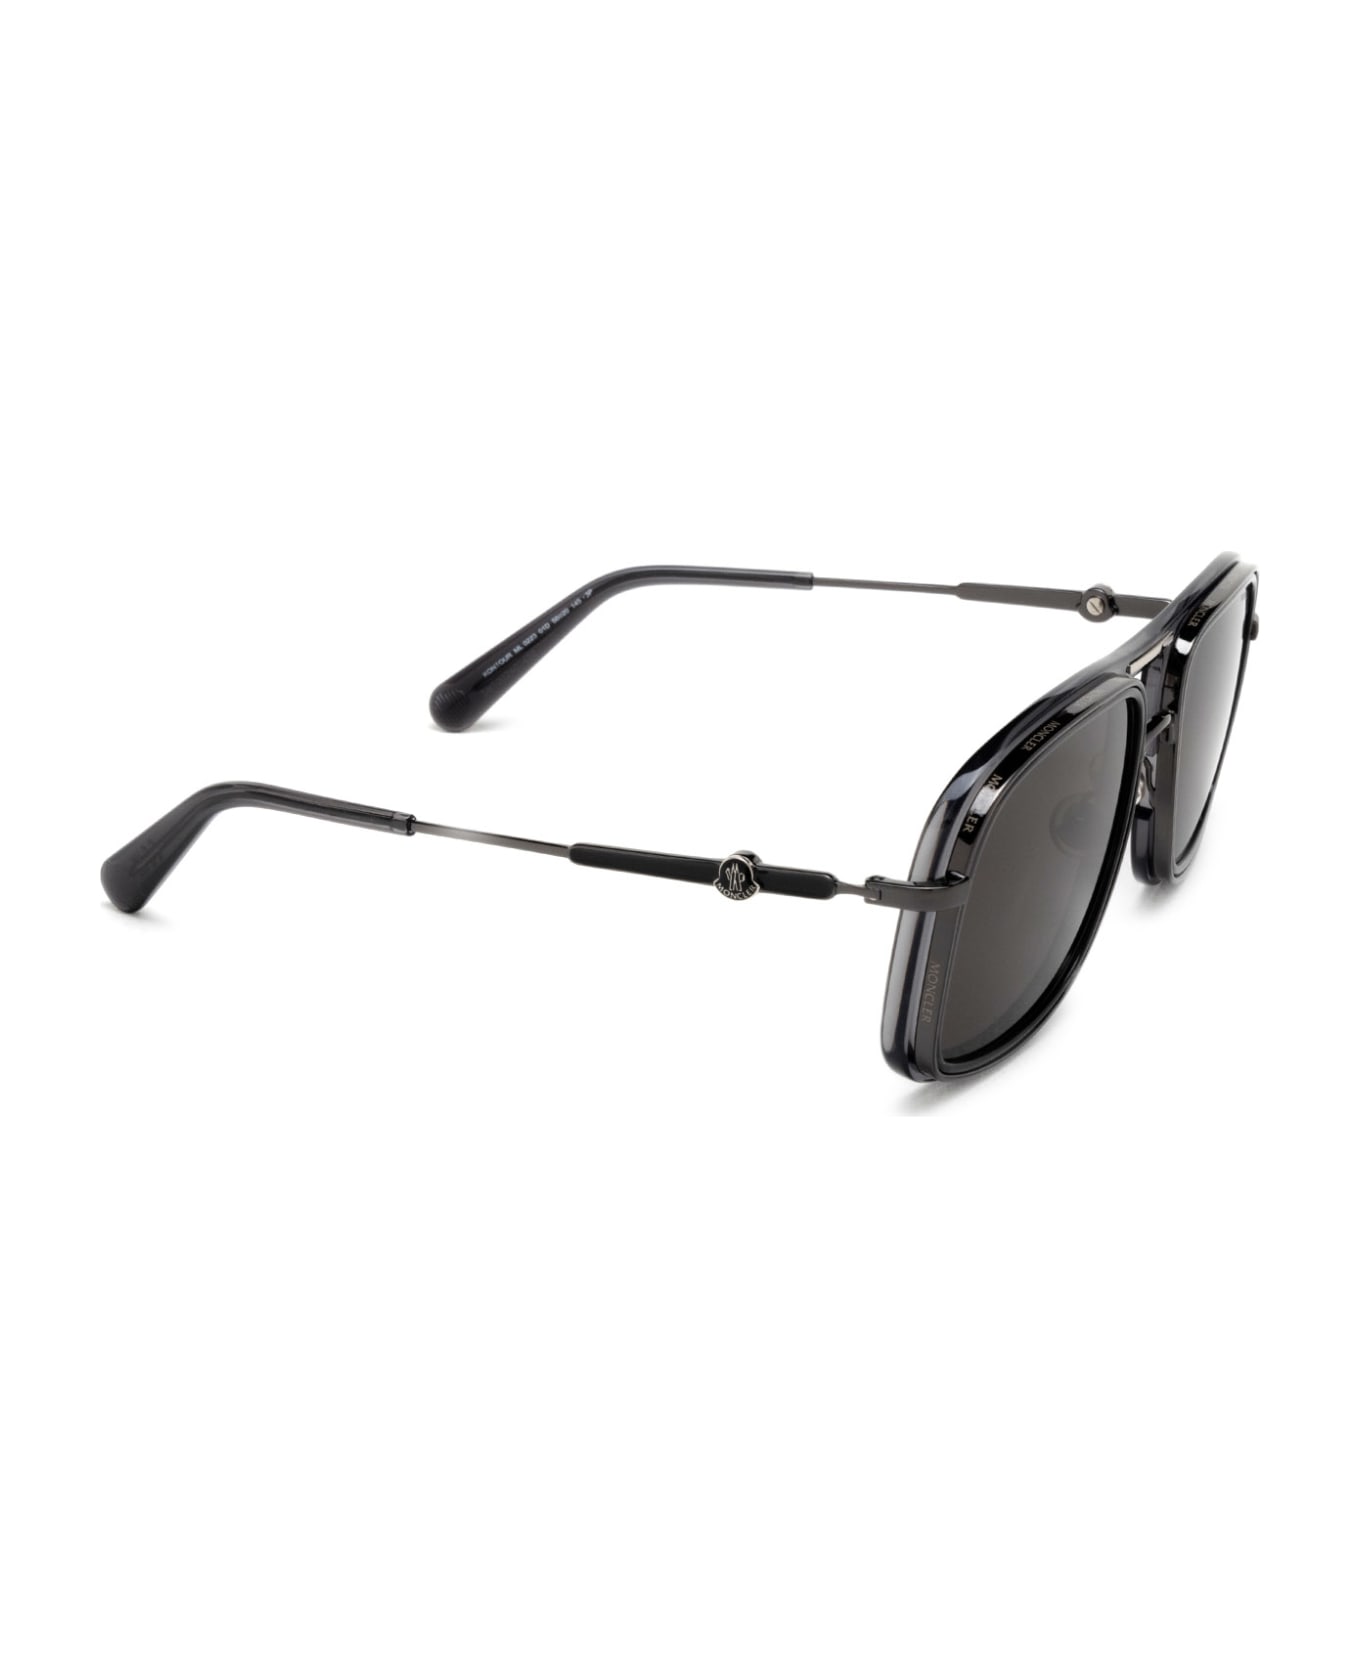 Moncler Eyewear Ml0223 Shiny Black Sunglasses - Shiny Black サングラス